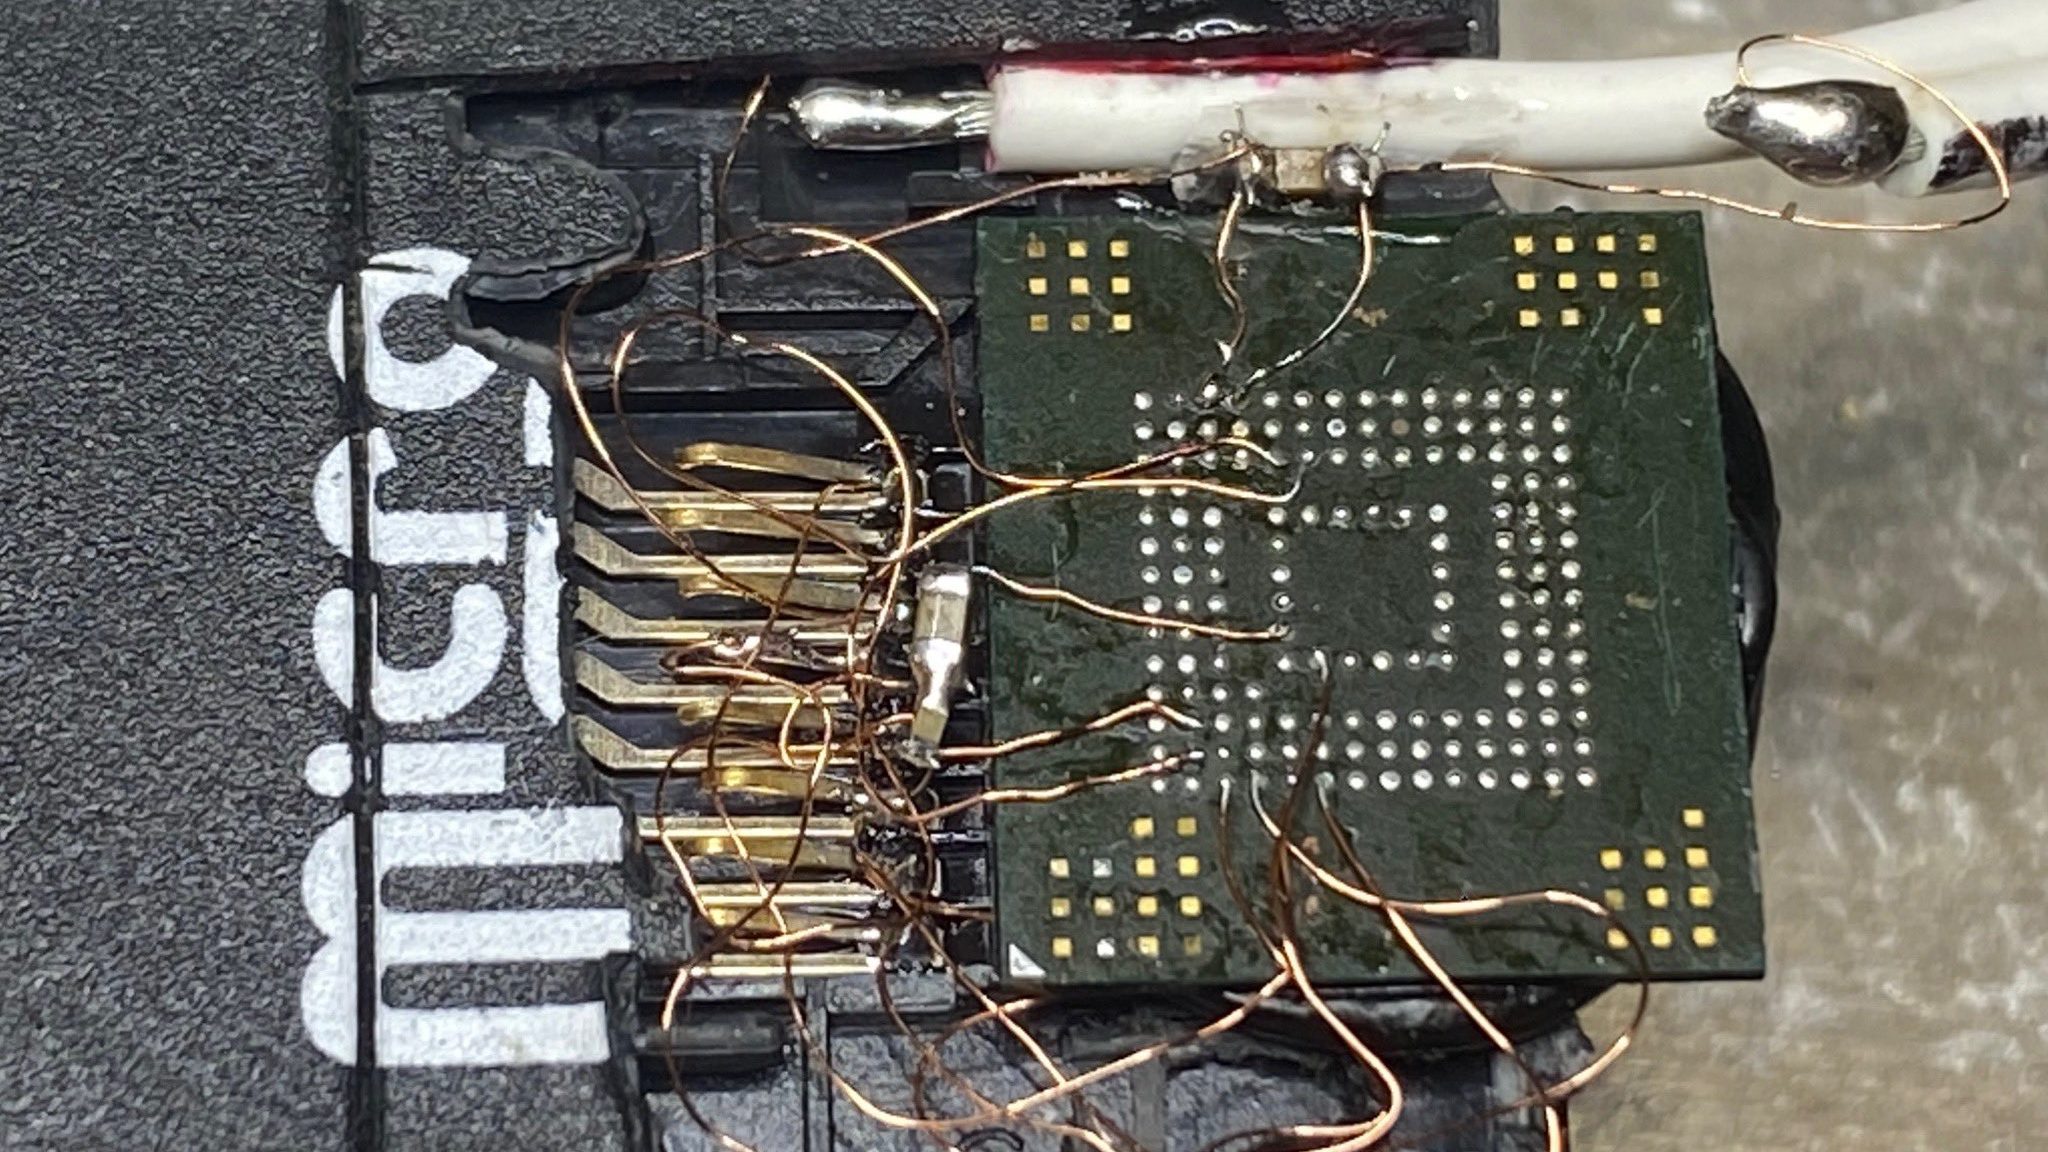 Dumping eines eMMC-Chips mit vielen Drähten Bodge